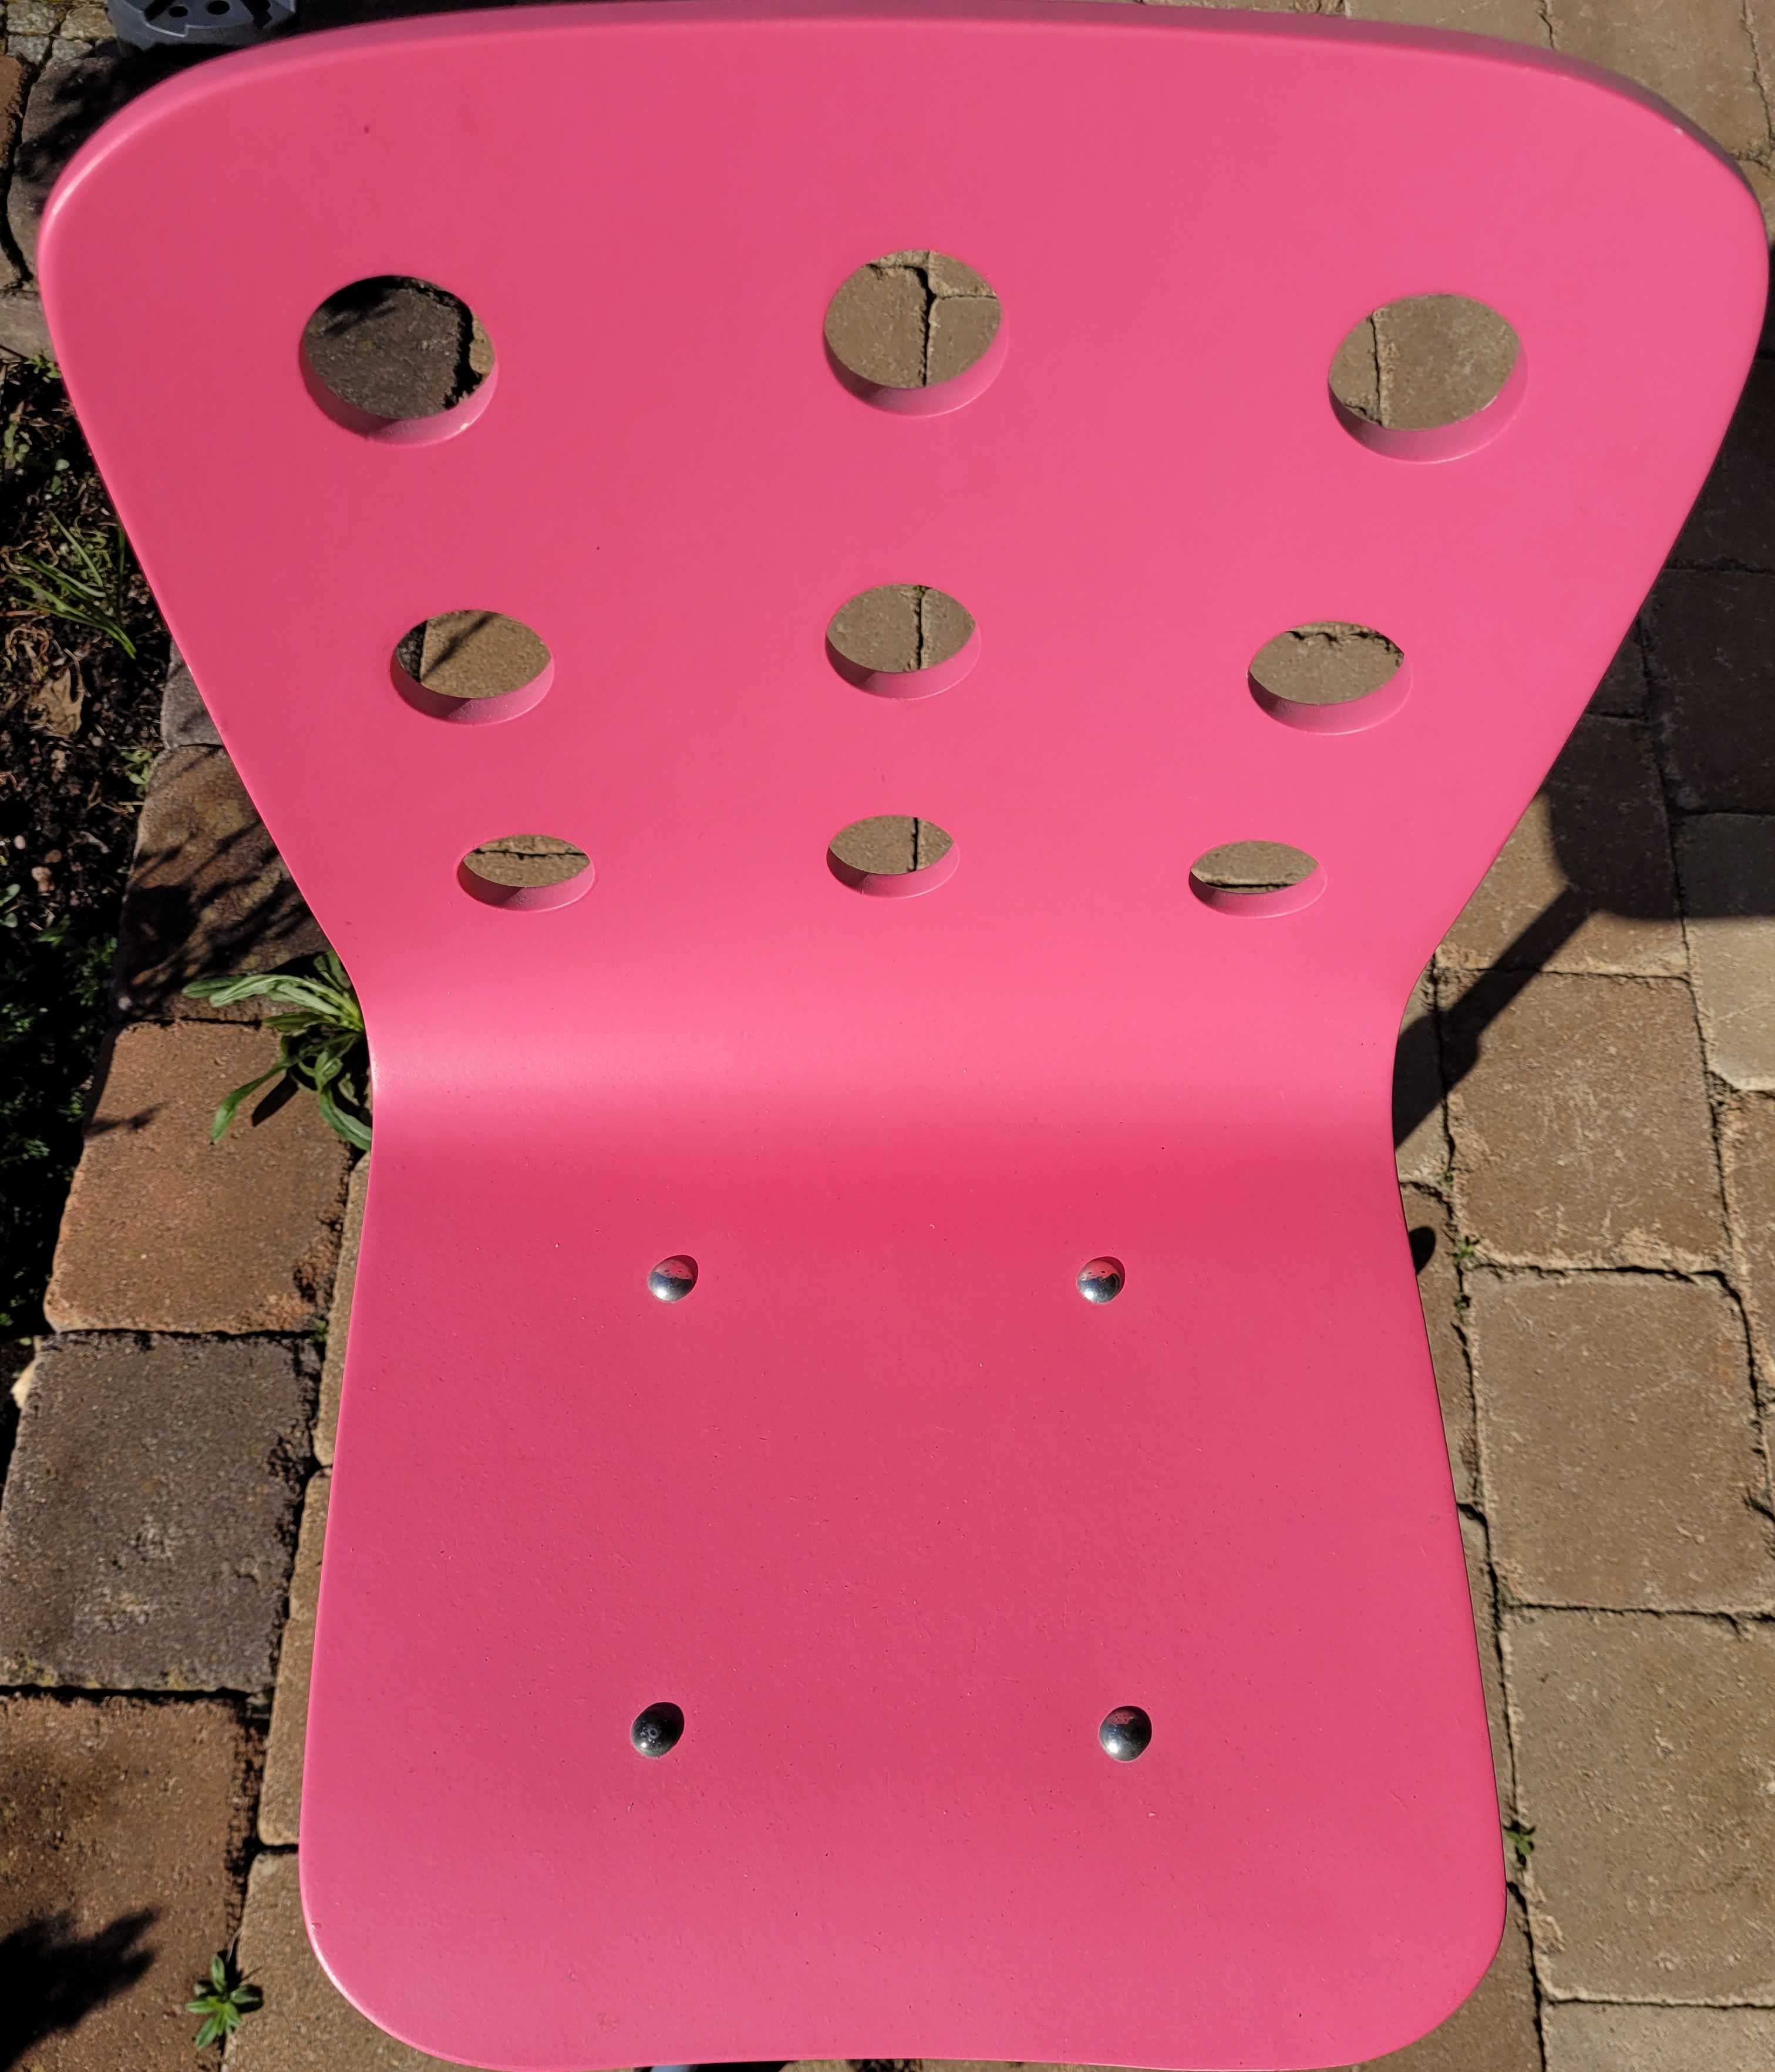 krzesełko/fotel do biurka dla dziecka z Ikea, regulowana wysokość